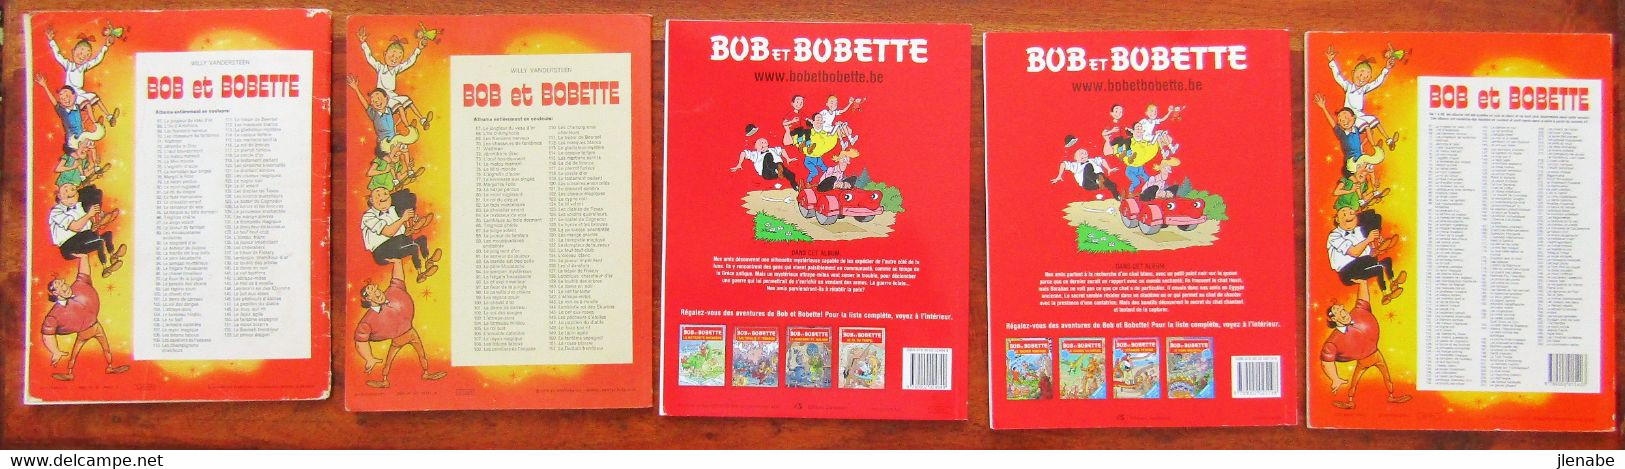 Bob Et Bobette Par Vandersteen Lot De 5 BD - Wholesale, Bulk Lots